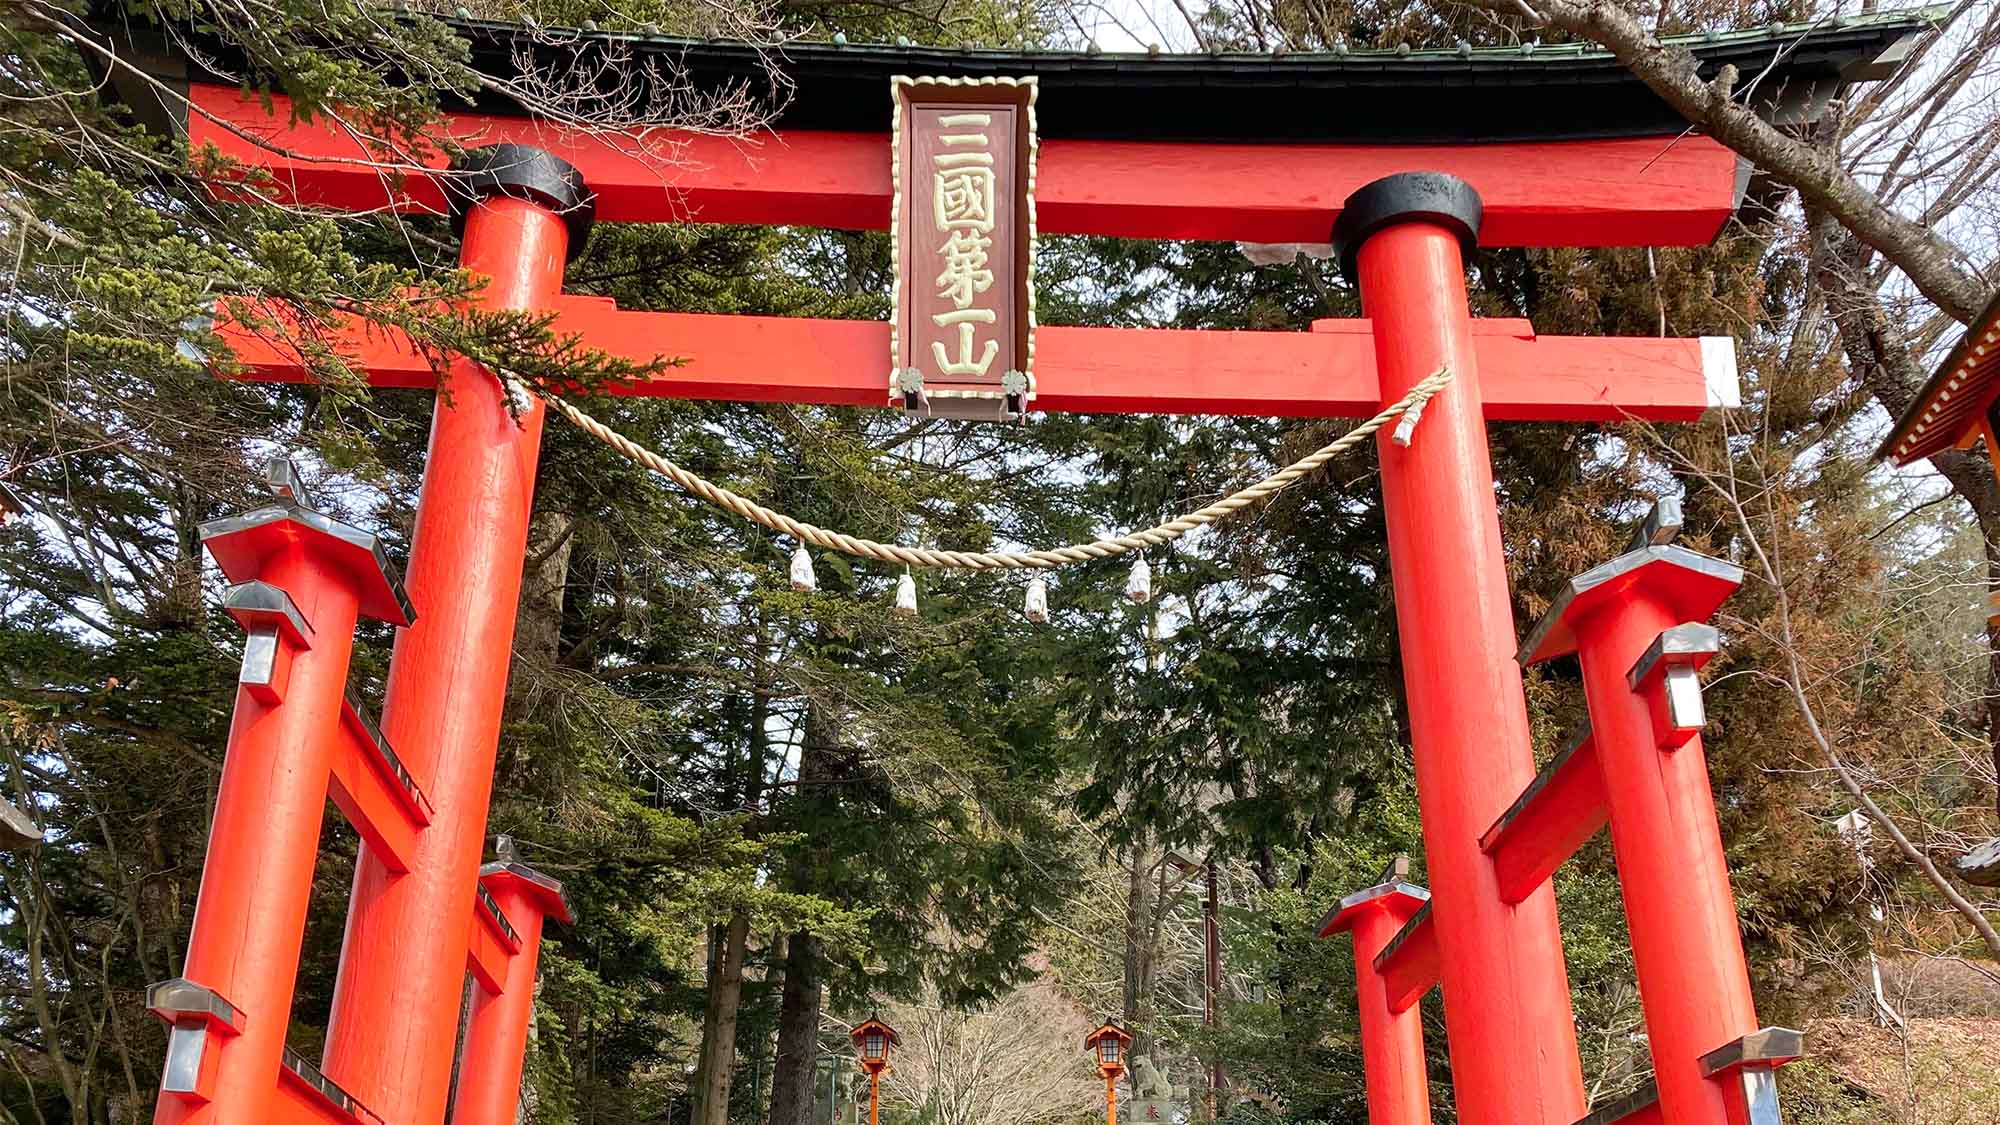 ・森の緑の中に赤が調和良く見える新倉富士浅間神社の大鳥居